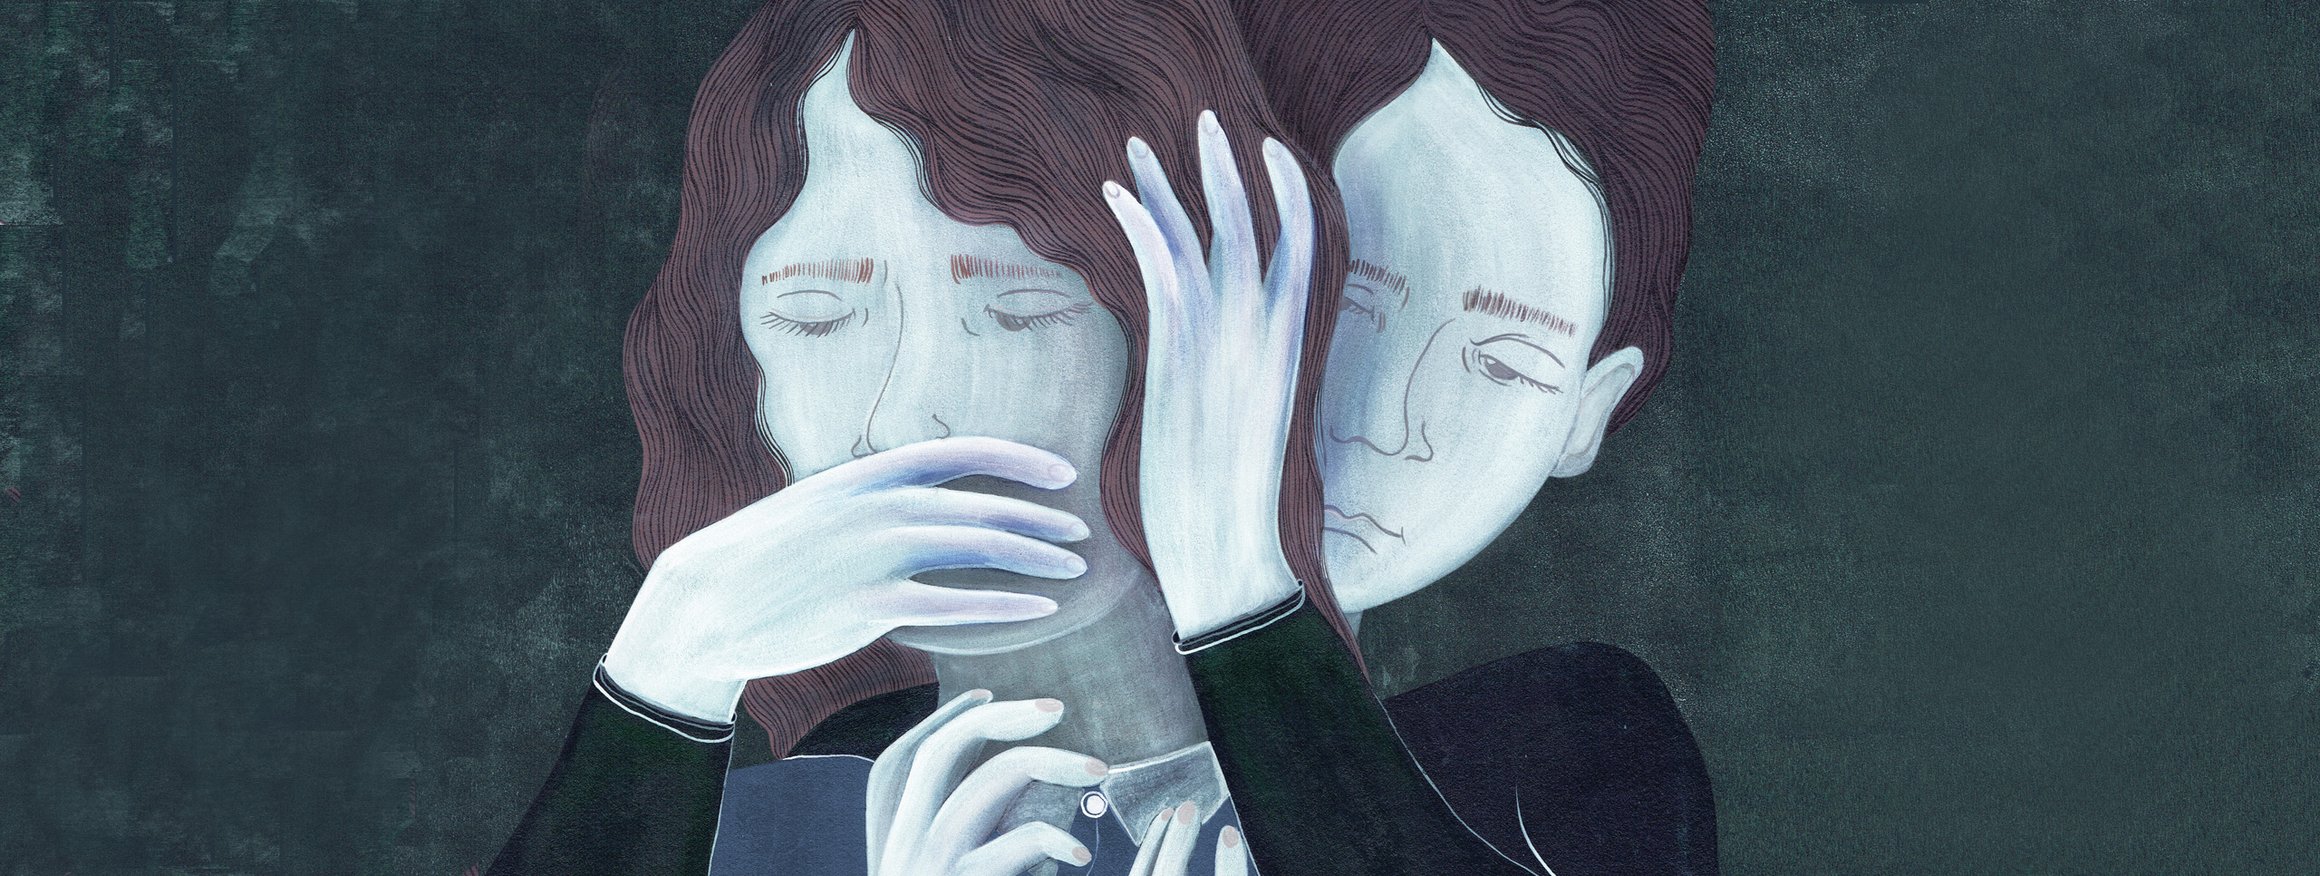 Die Illustration zeigt einen Bruder, der seine Schwester körperlich bedrängt und zum Schweigen nötigt